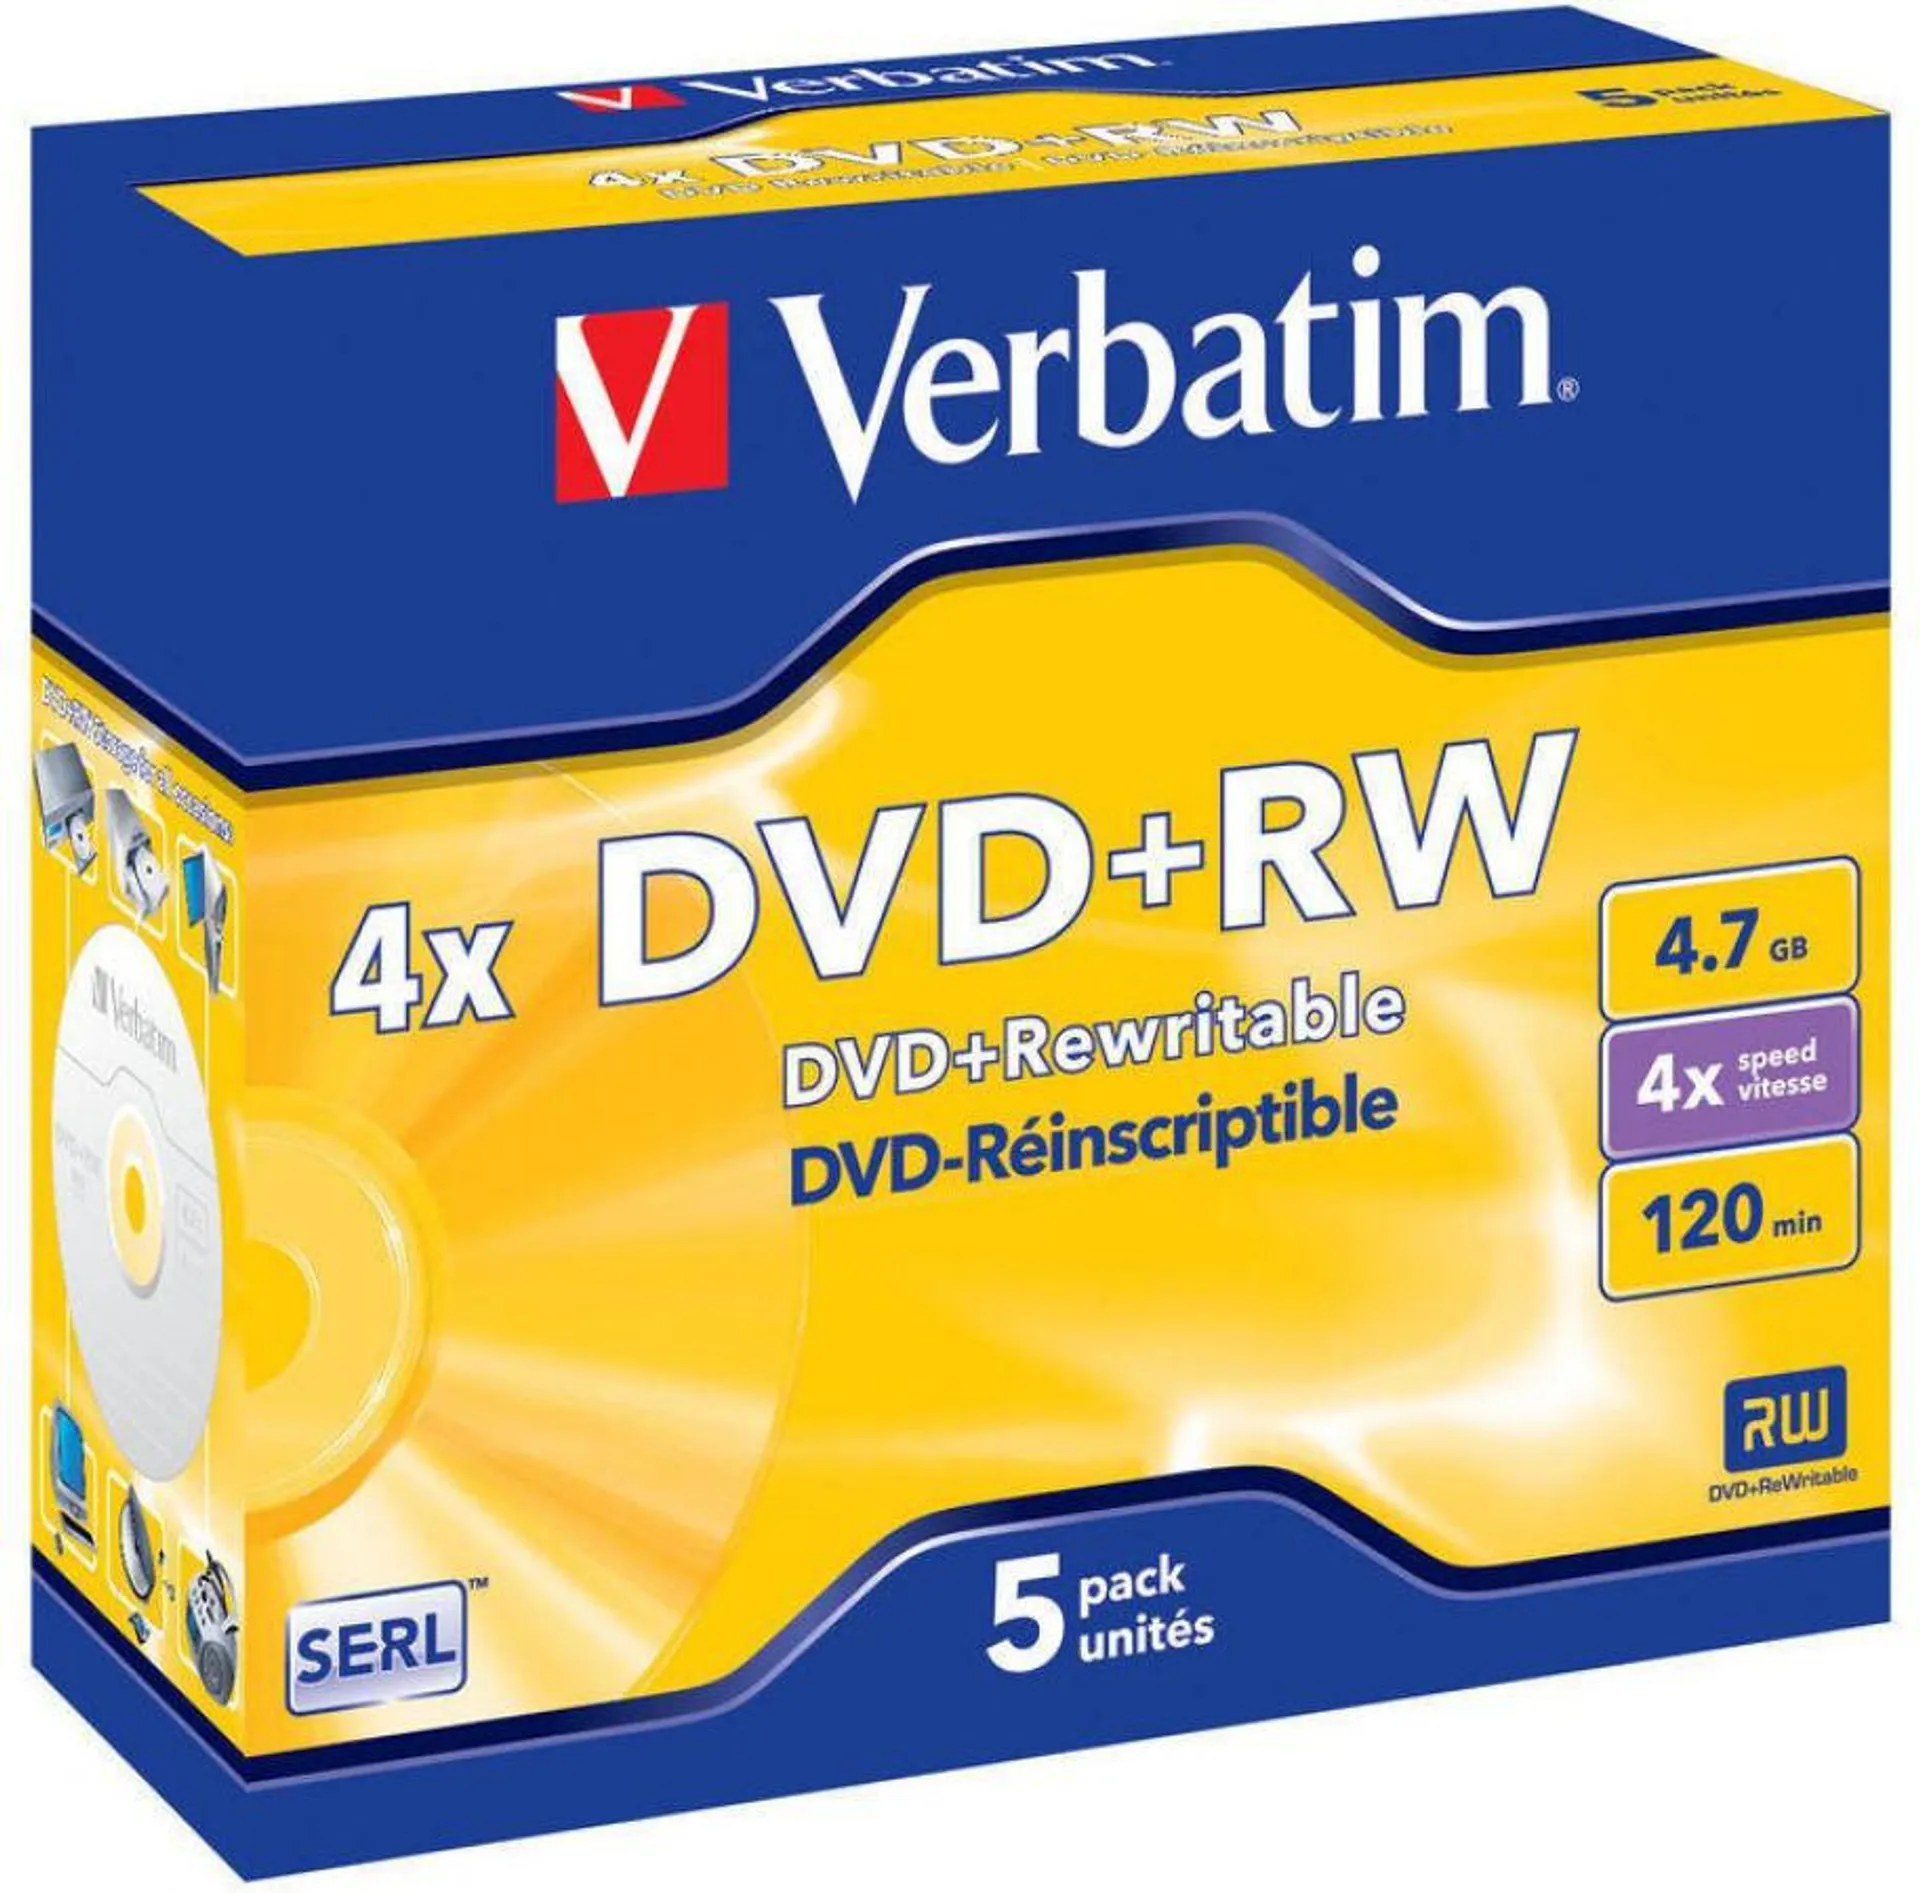 Verbatim DVD+RW 4x, 4700MB/120min, Jewelcase 5-pack, 43229